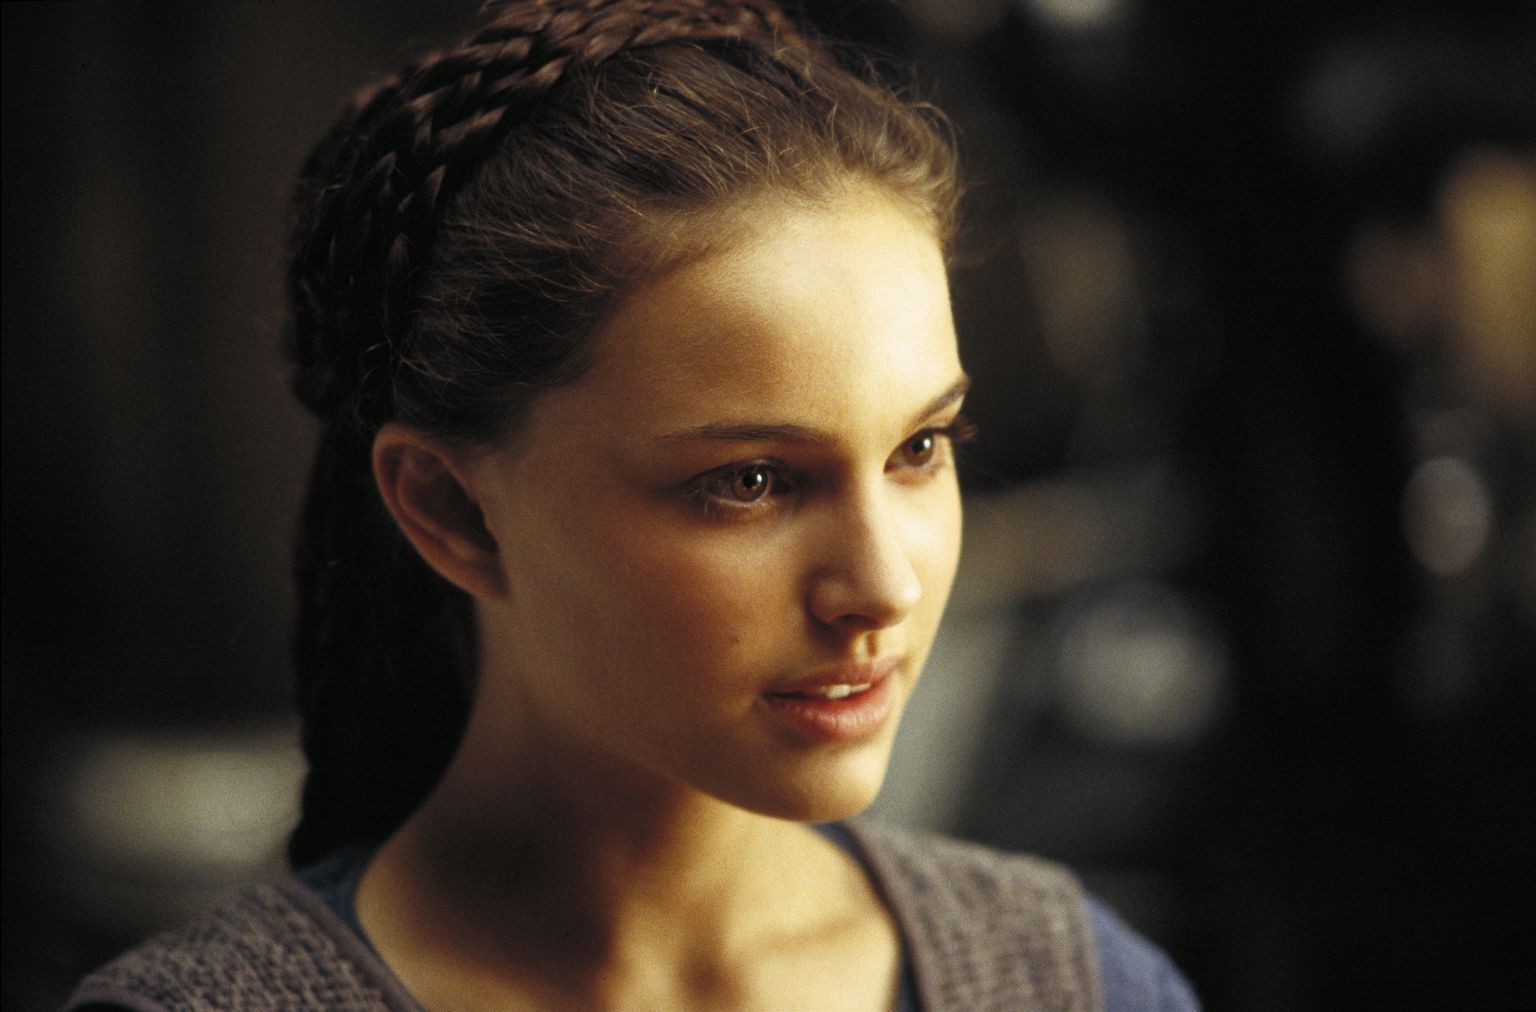 Natalie Portman Women Star Wars 1536x1012